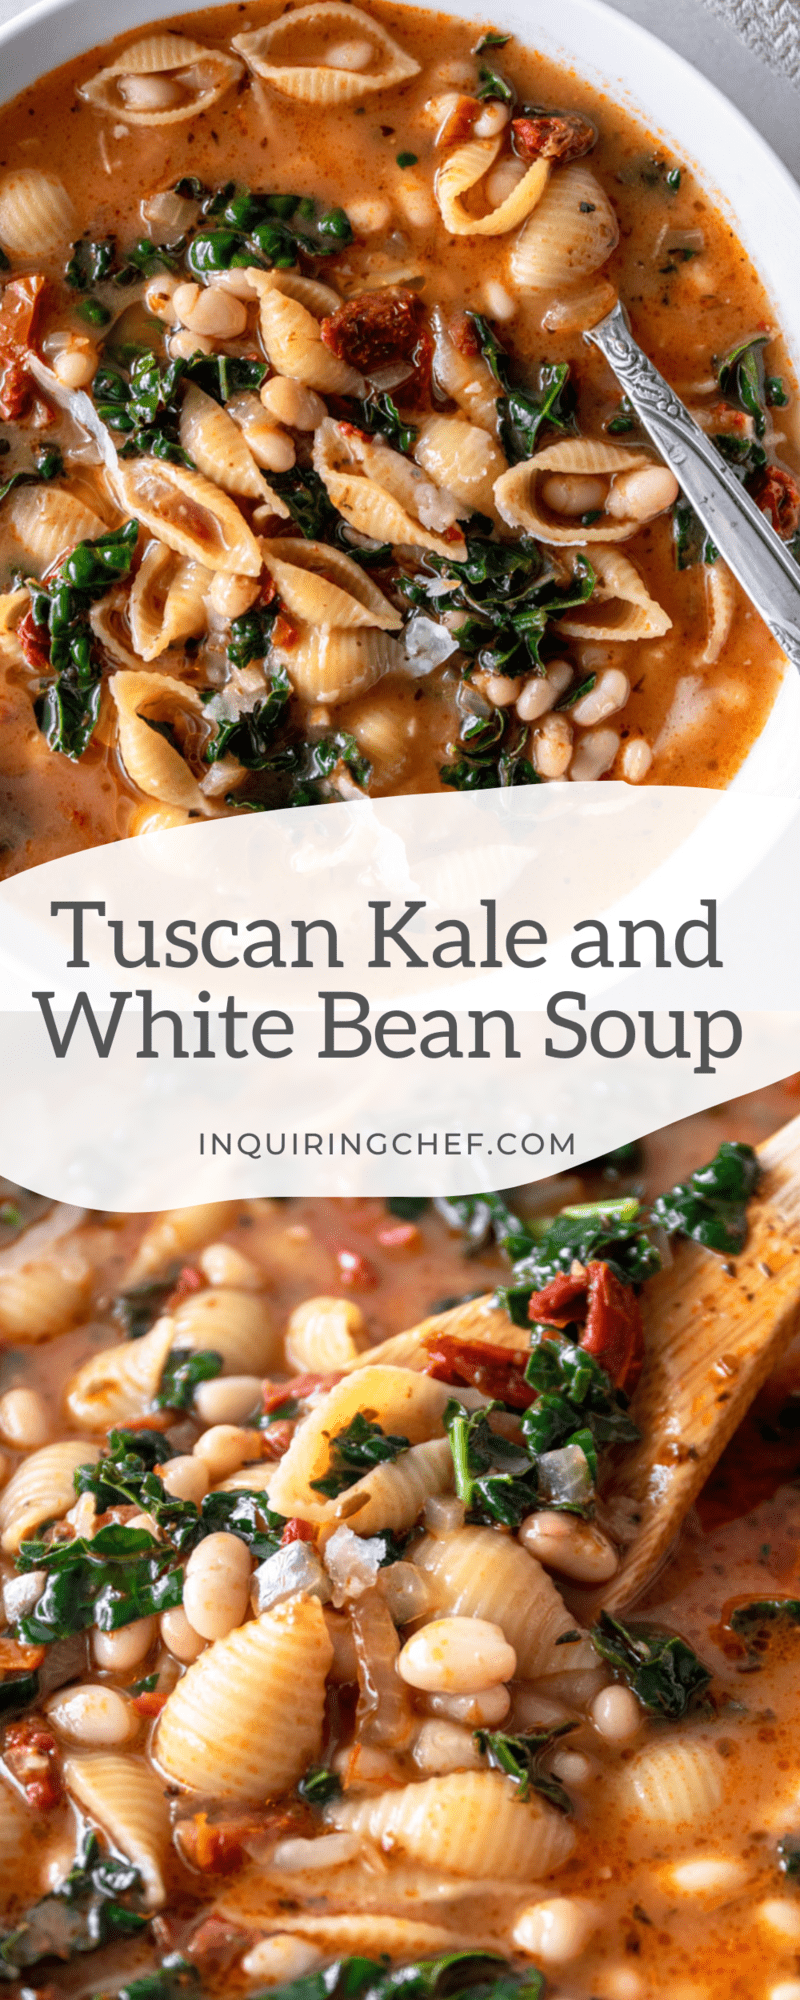 tuscan white bean soup